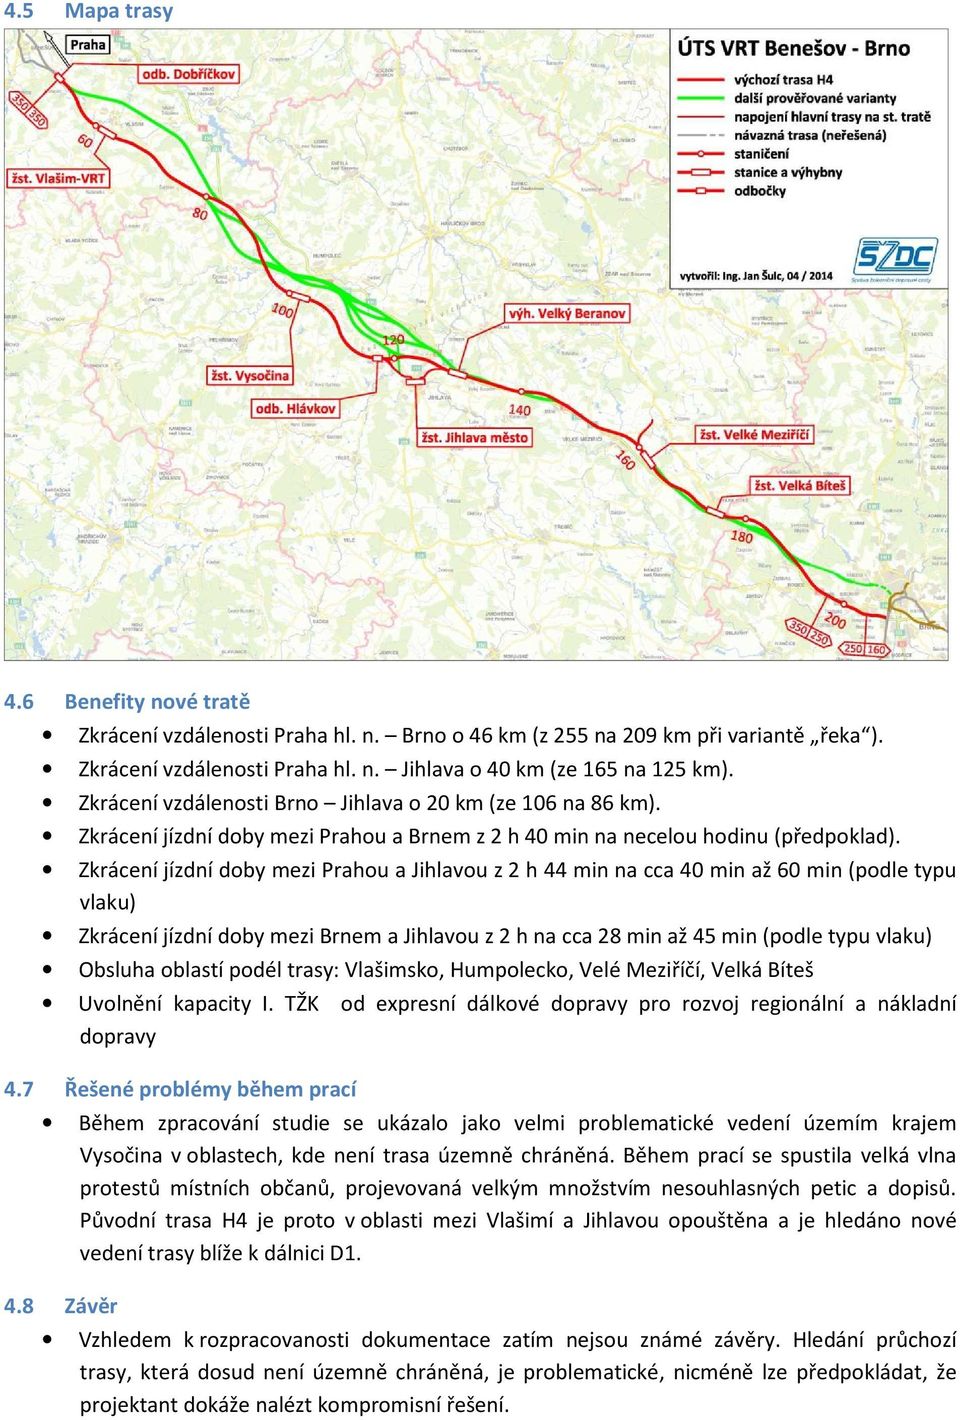 Zkrácení jízdní doby mezi Prahou a Jihlavou z 2 h 44 min na cca 40 min až 60 min (podle typu vlaku) Zkrácení jízdní doby mezi Brnem a Jihlavou z 2 h na cca 28 min až 45 min (podle typu vlaku) Obsluha